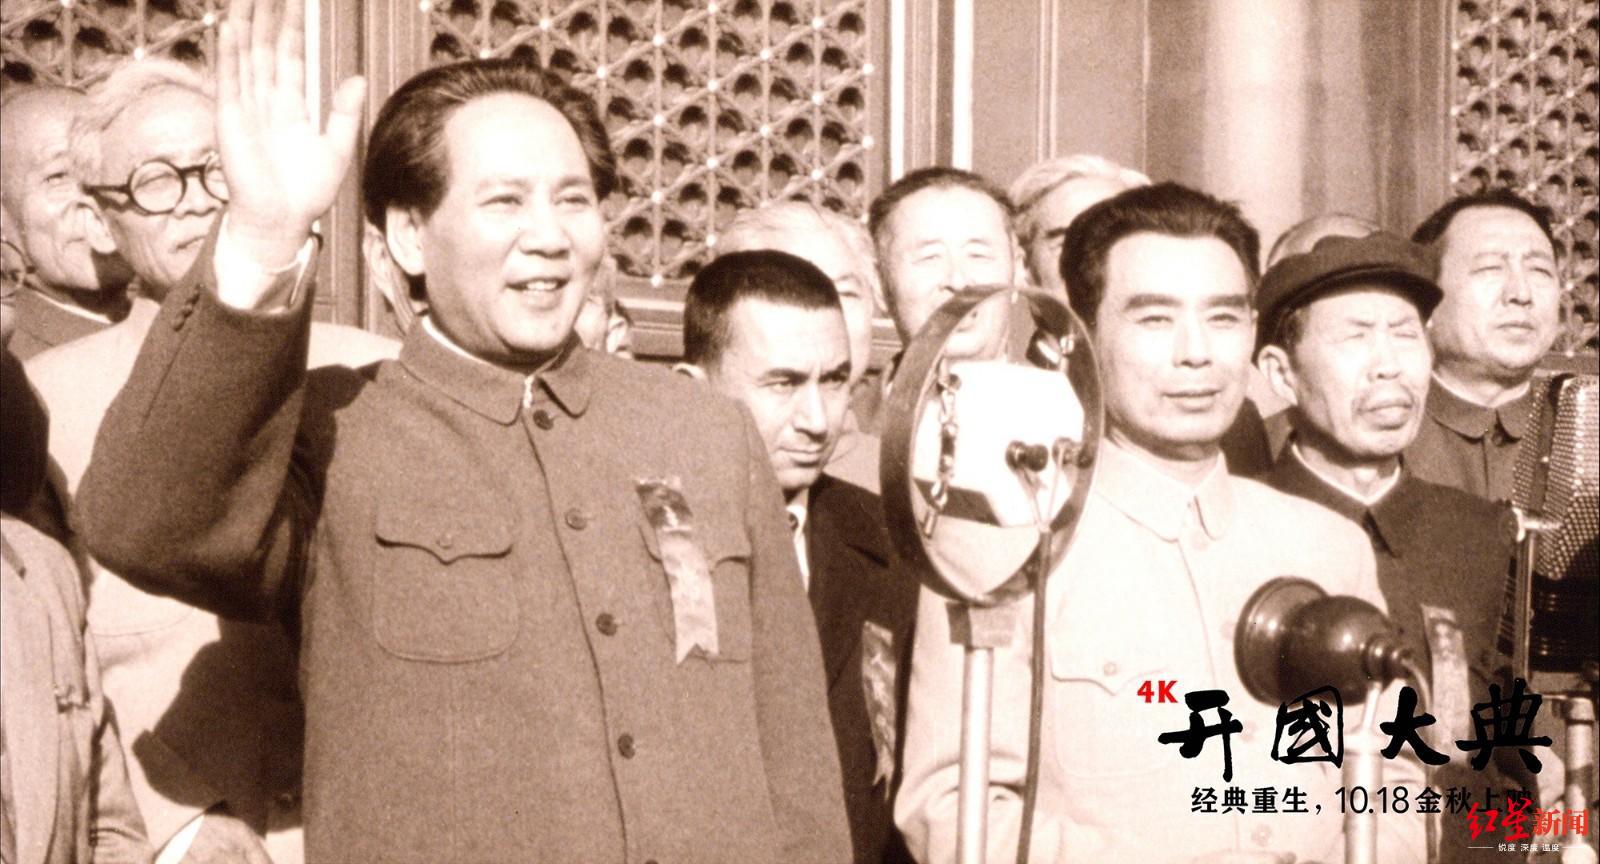 《开国大典》4k修复重映,献礼新中国成立70周年